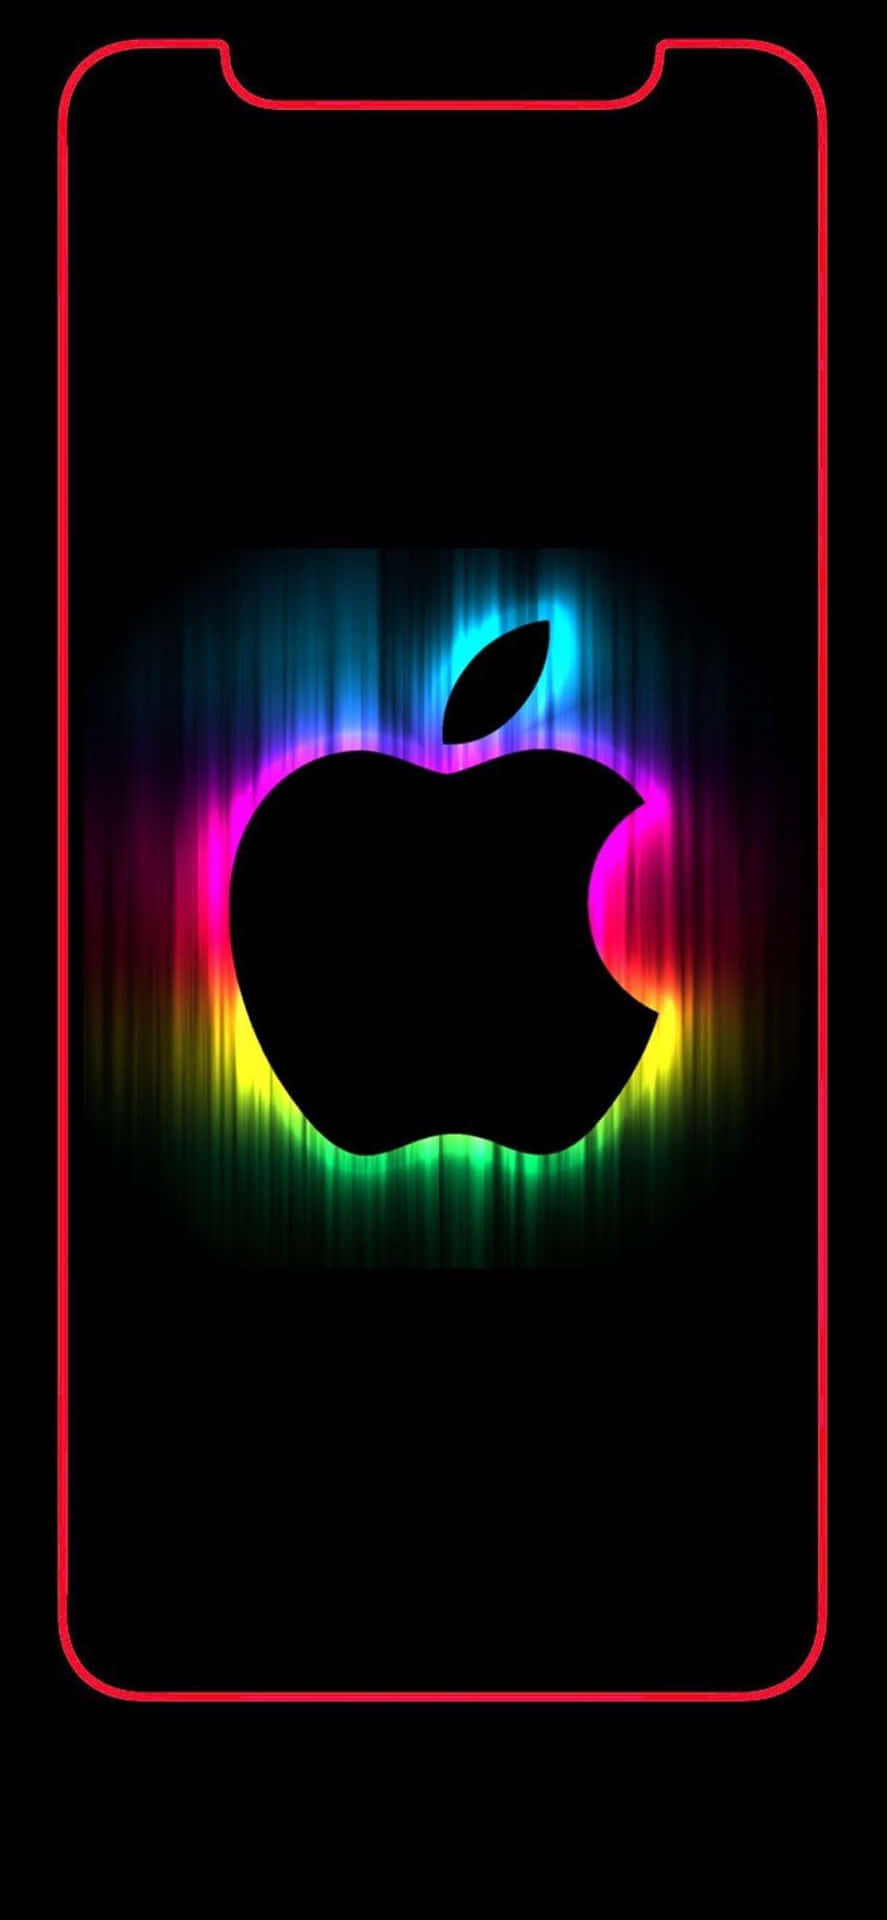 Increíblefondo De Pantalla De Apple Hd Con Luces De Neón En Forma De Arco Iris Para Iphone. Fondo de pantalla